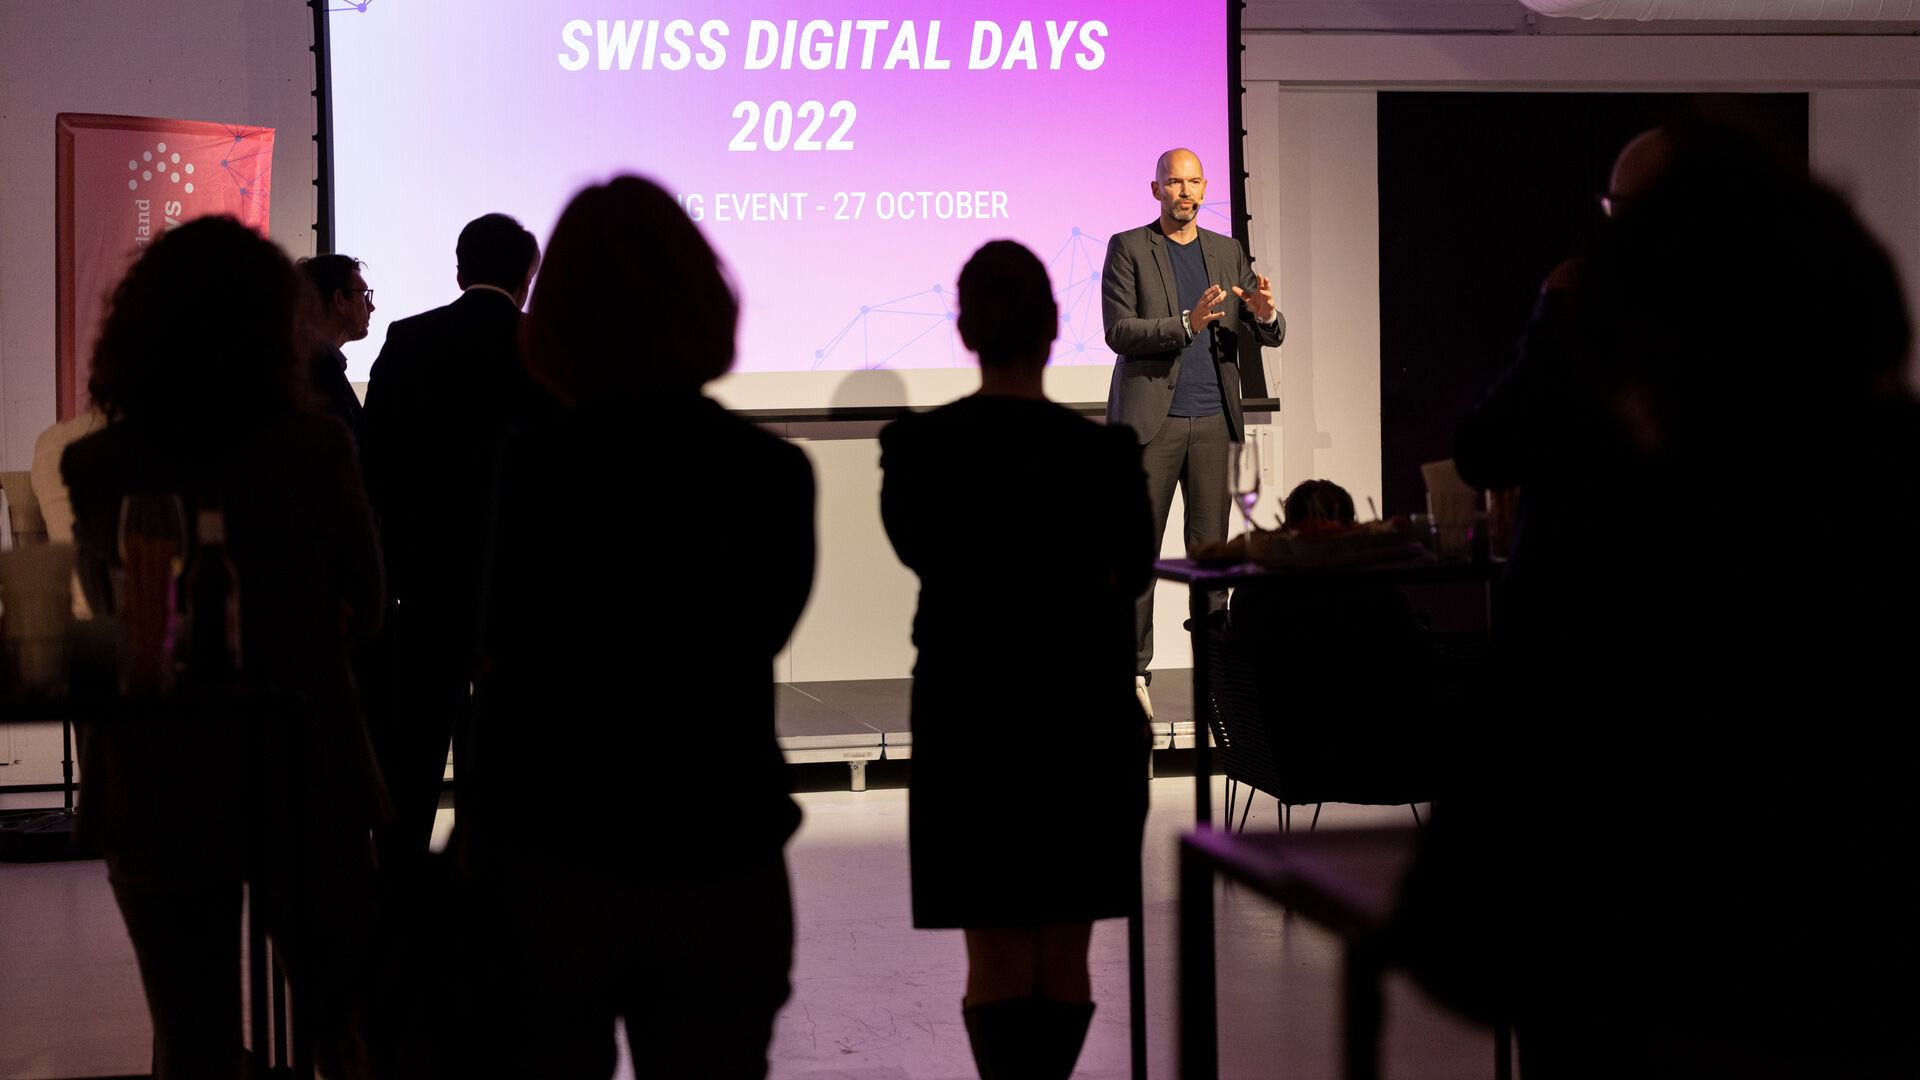 „Swiss Digital Days“: 2022 m. „Šveicarijos skaitmeninių dienų“ baigiamasis renginys Freiruum mieste Zug (Zug) spalio 27 d.